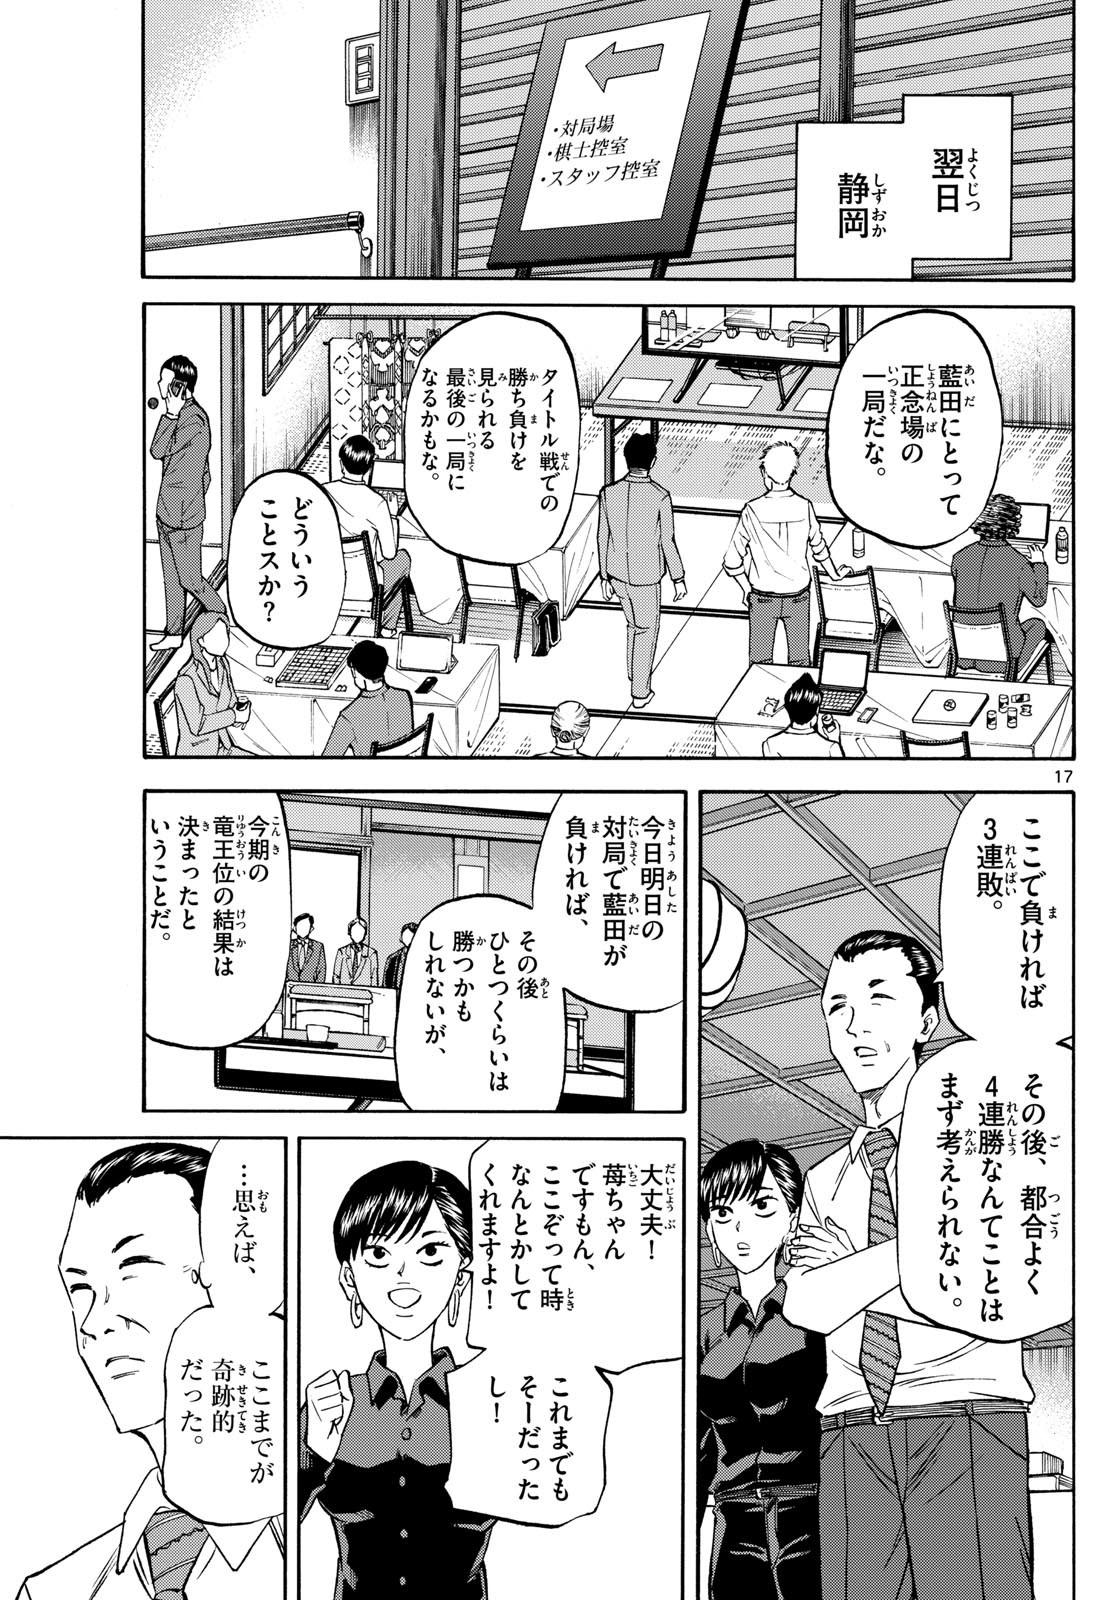 Ryu-to-Ichigo - Chapter 158 - Page 17